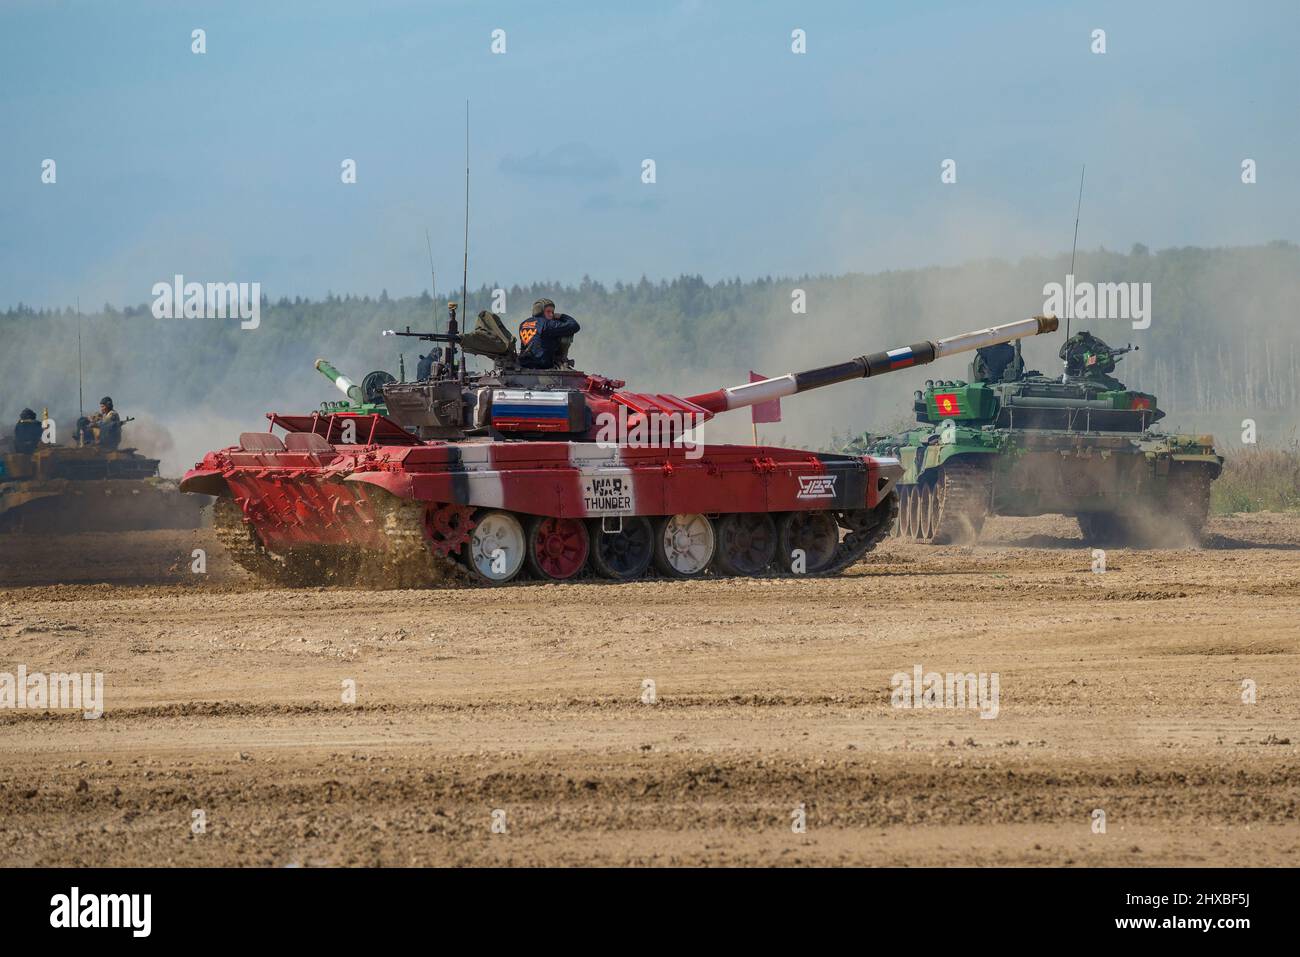 RÉGION DE MOSCOU, RUSSIE - 25 AOÛT 2020 : le char de l'équipe russe de biathlon de char quitte le terrain d'entraînement. Jeux internationaux de l'armée Banque D'Images